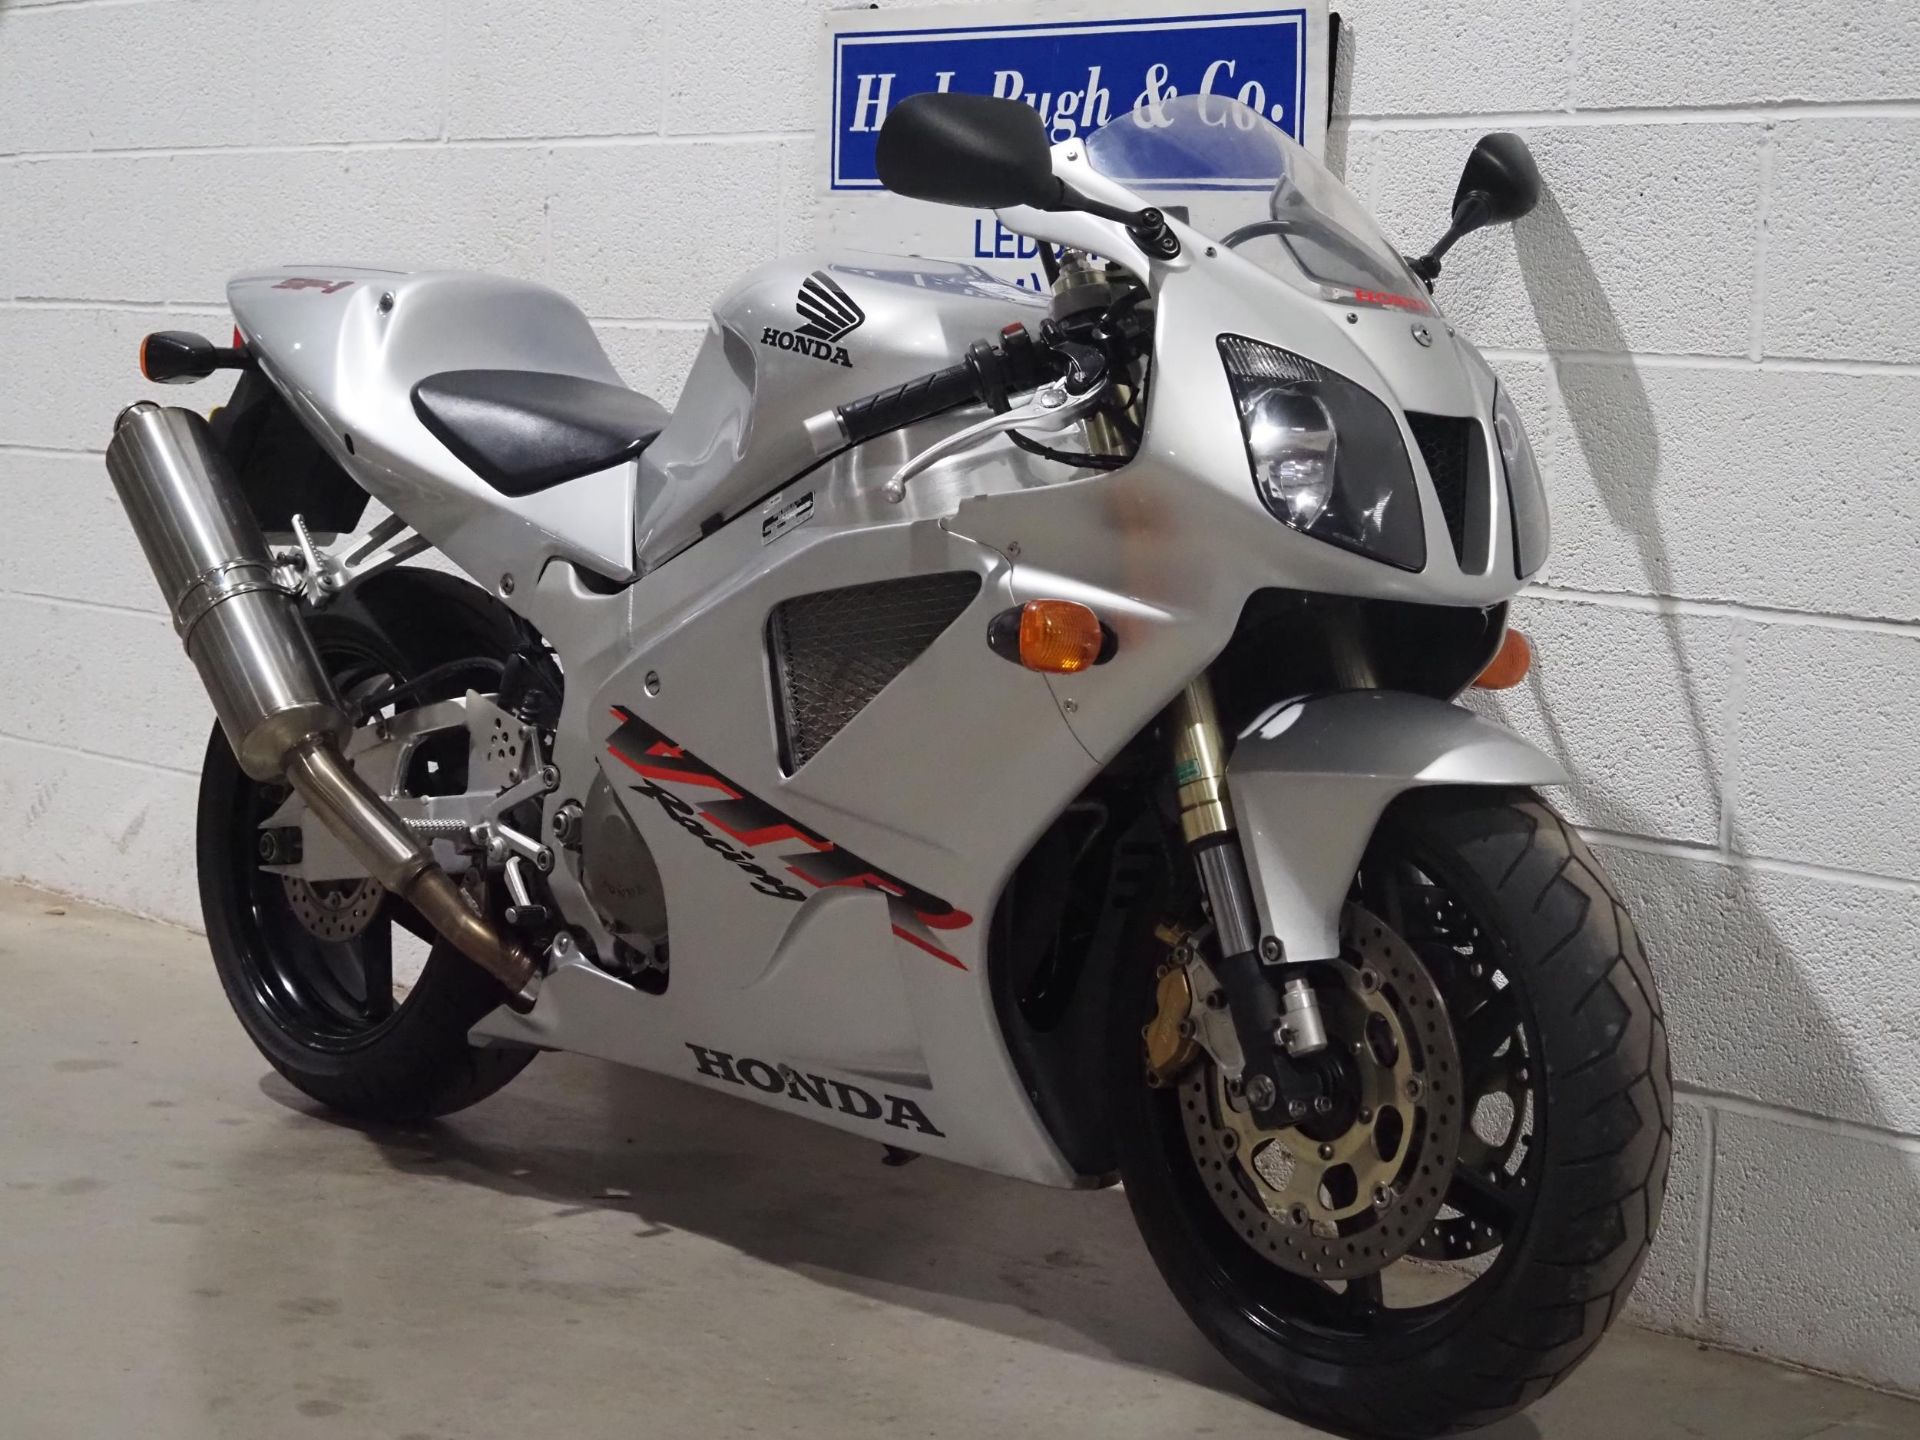 Honda VTR1000 motorcycle. 2001. 999cc. Runs and rides. Showing 5268 miles. Reg. GP51 YFH. V5 and - Image 2 of 7